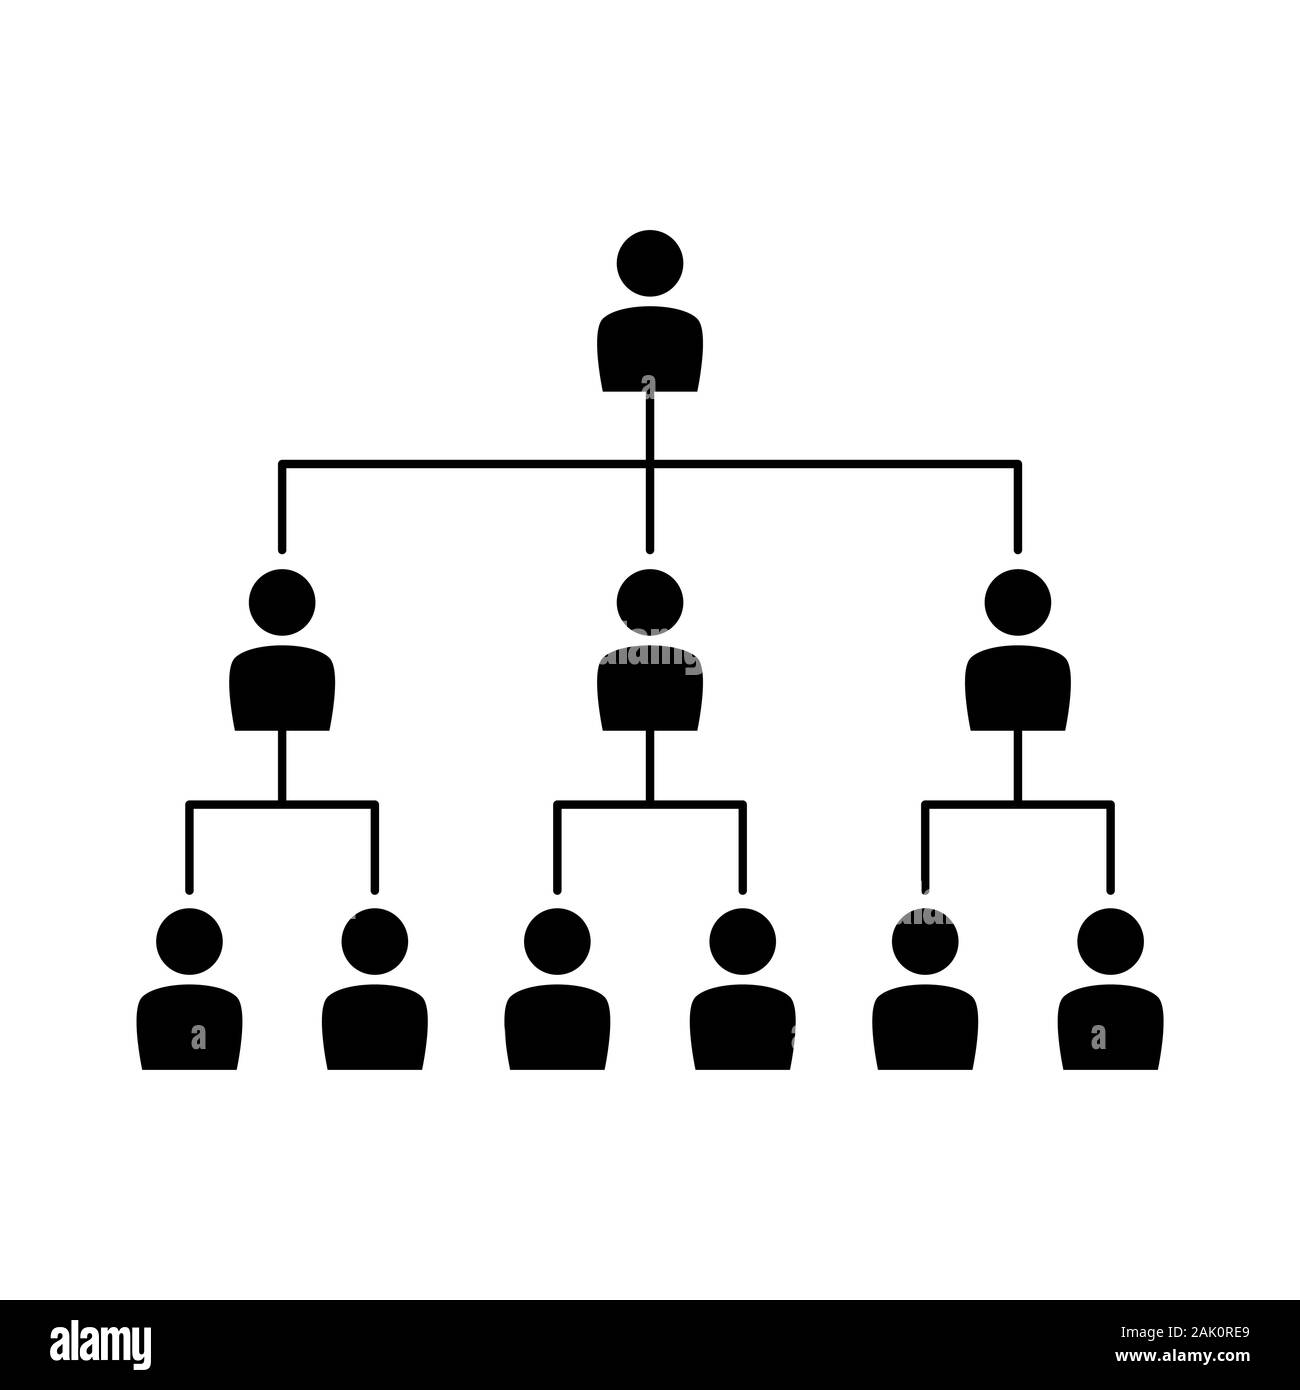 Organigrama silueta con personas aisladas de fondo blanco. Estructura jerárquica corporativa Ilustración del Vector